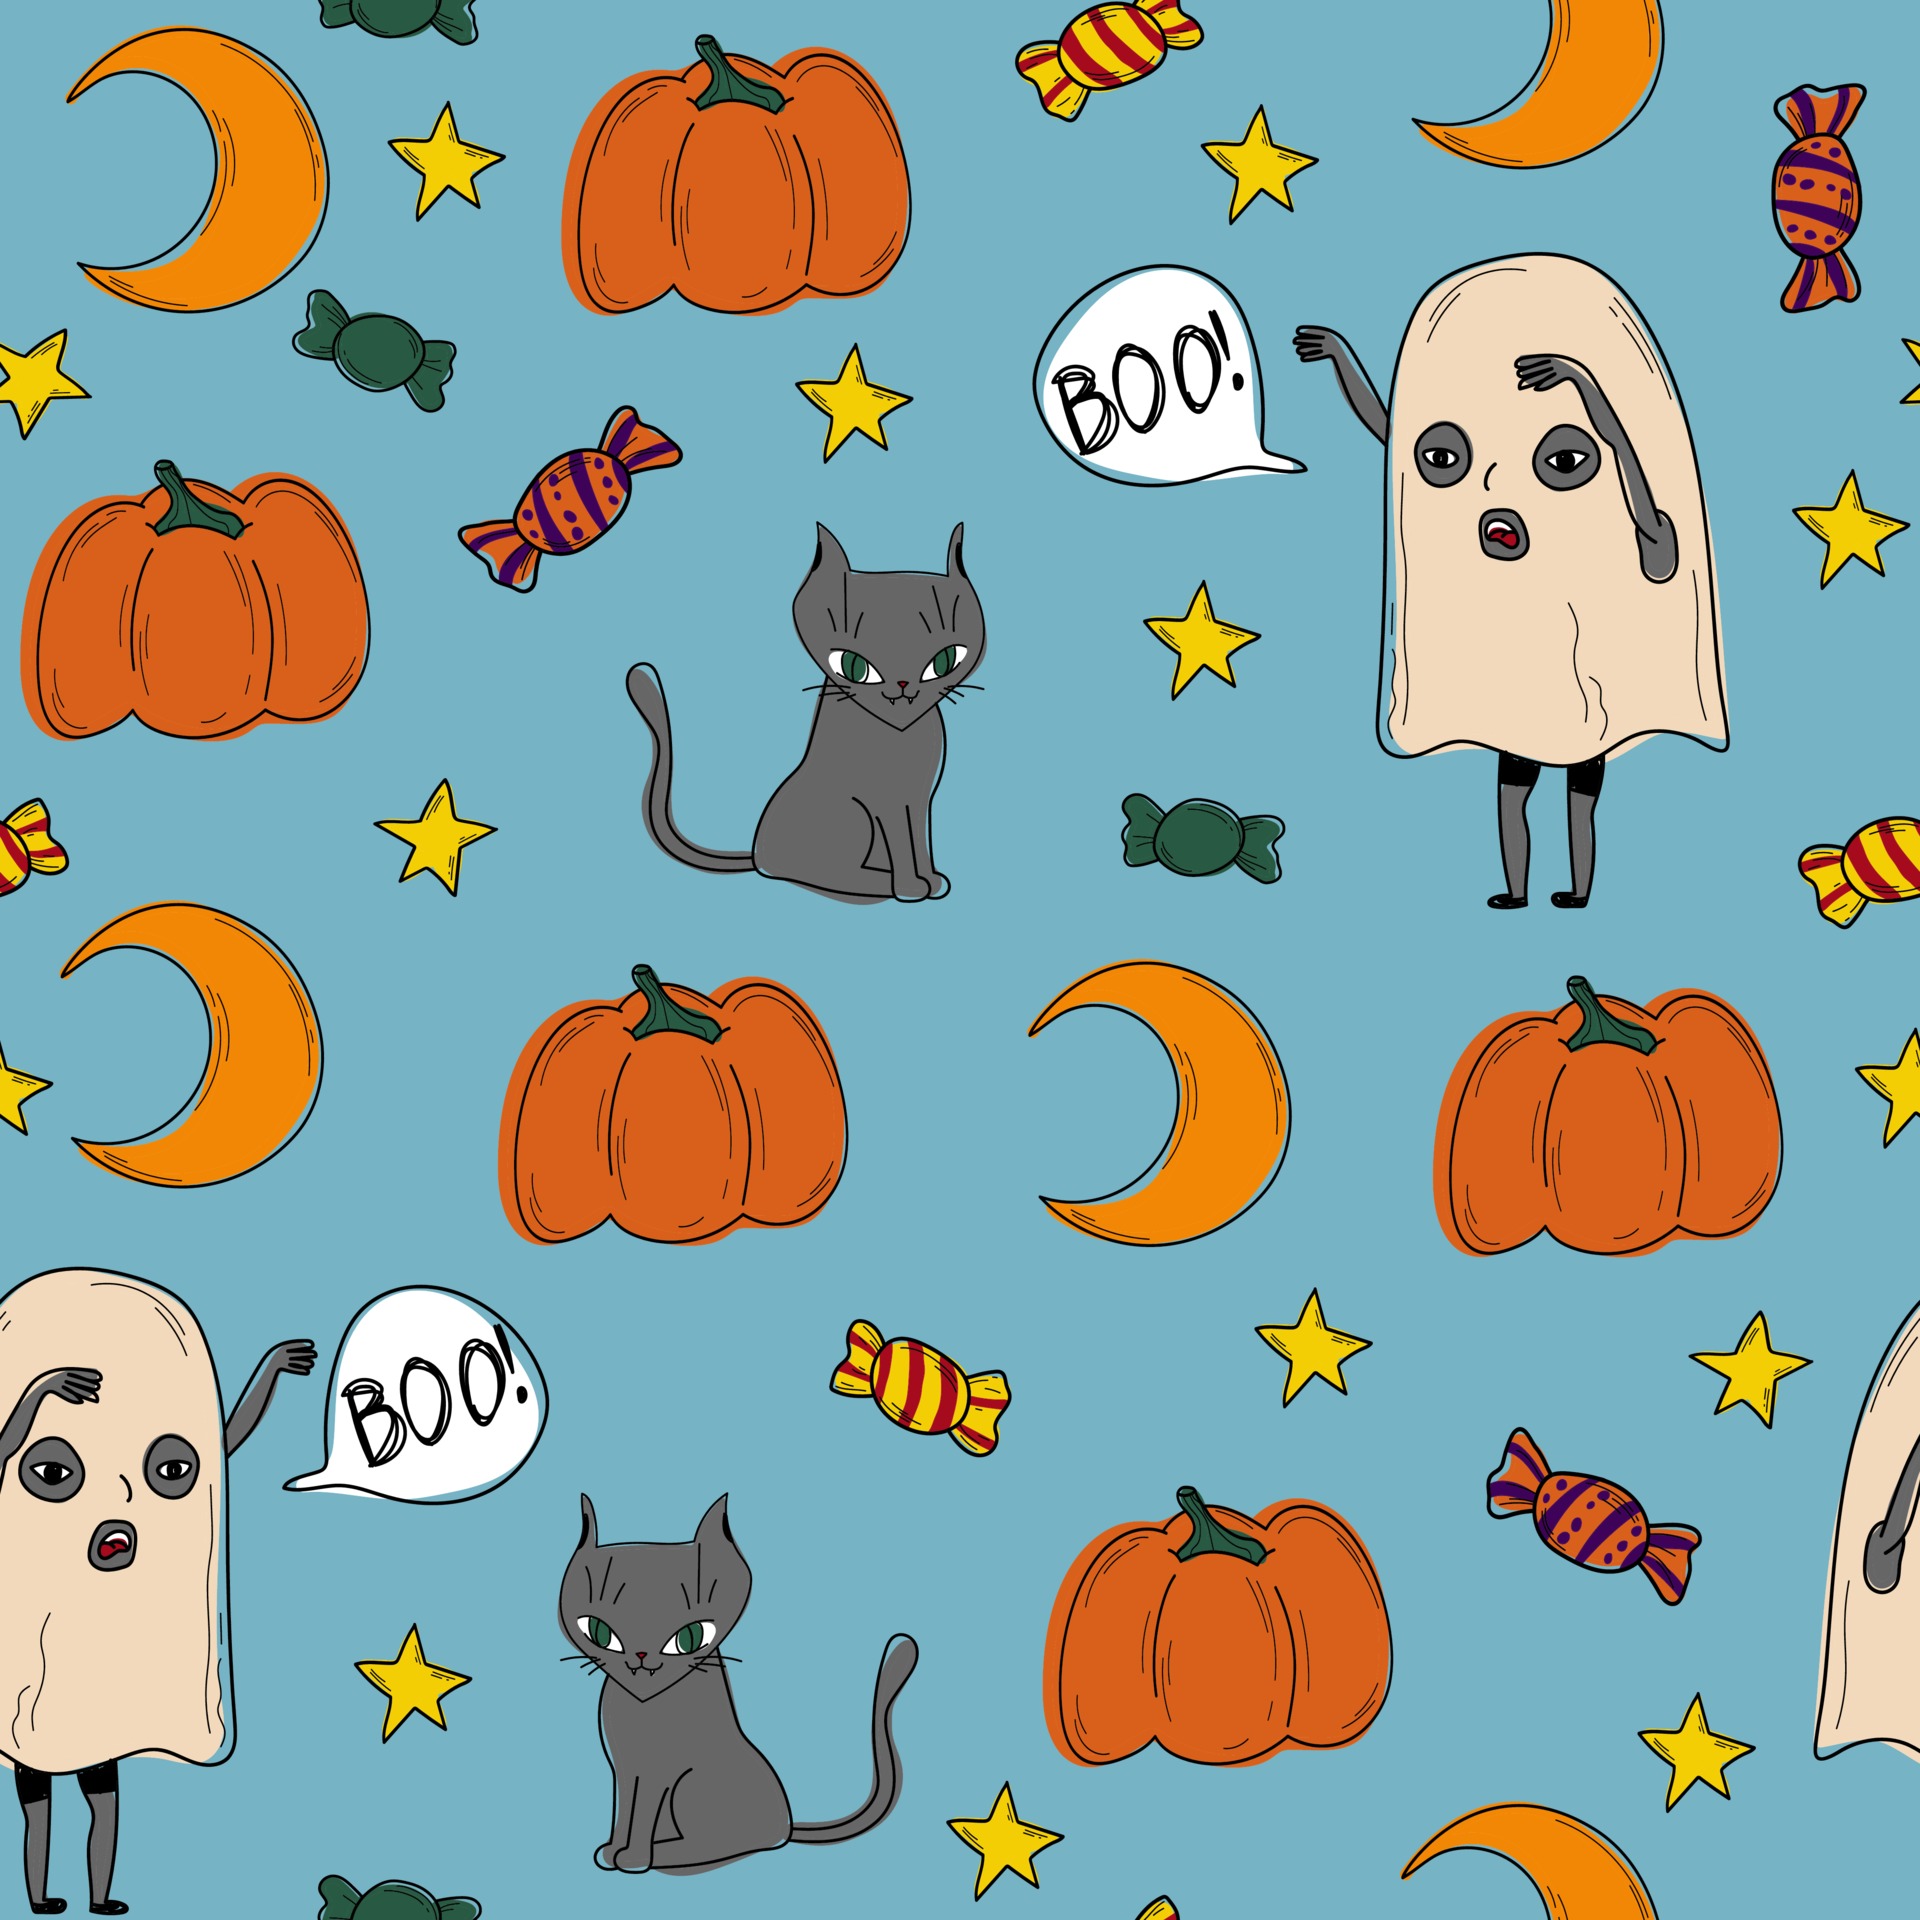 Bộ sưu tập họa tiết ma quái màu xanh với hình ảnh ma, kẹo, bí ngô và mặt trăng làm chủ đạo sẽ mang đến cho bạn những trải nghiệm thú vị trong mùa lễ Halloween.